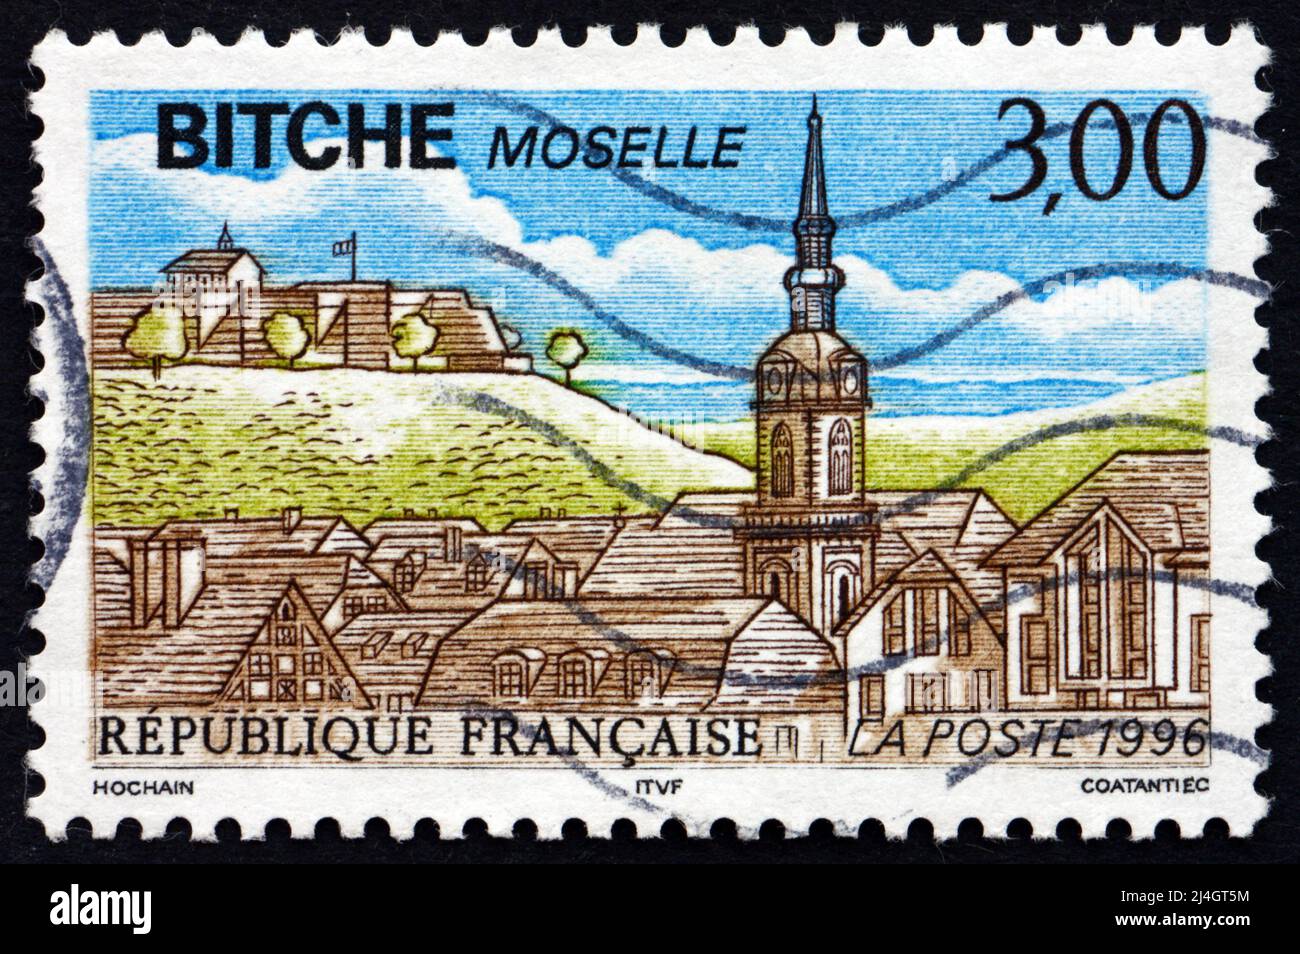 FRANCIA - CIRCA 1990: Un francobollo stampato in Francia mostra la vista di Bitche, comune nel dipartimento Mosella della Regione Lorena, circa 1990 Foto Stock